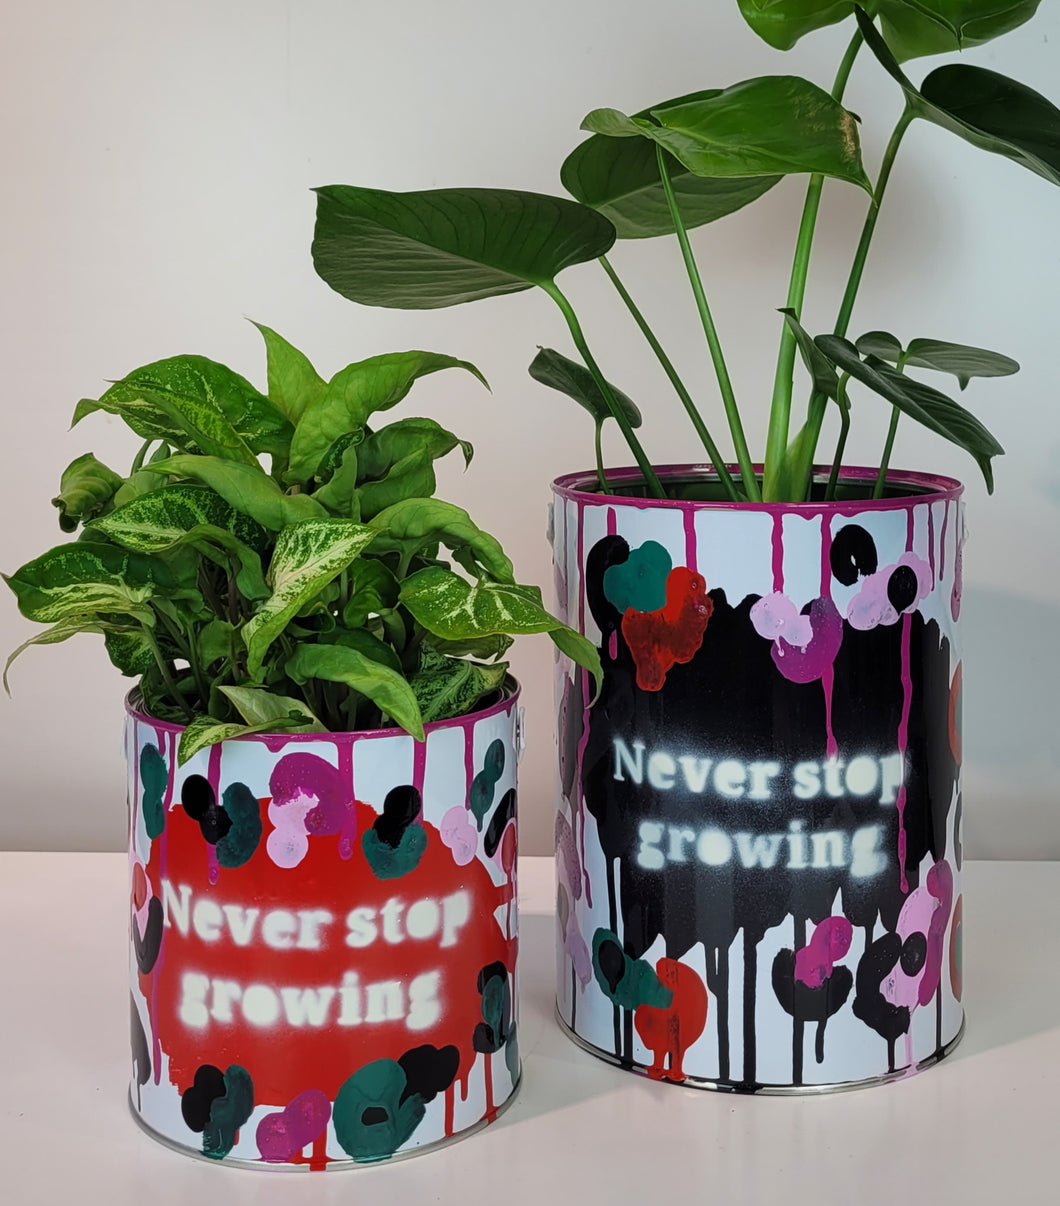 Paint Pot Planter 'Grow Series' Never stop growing